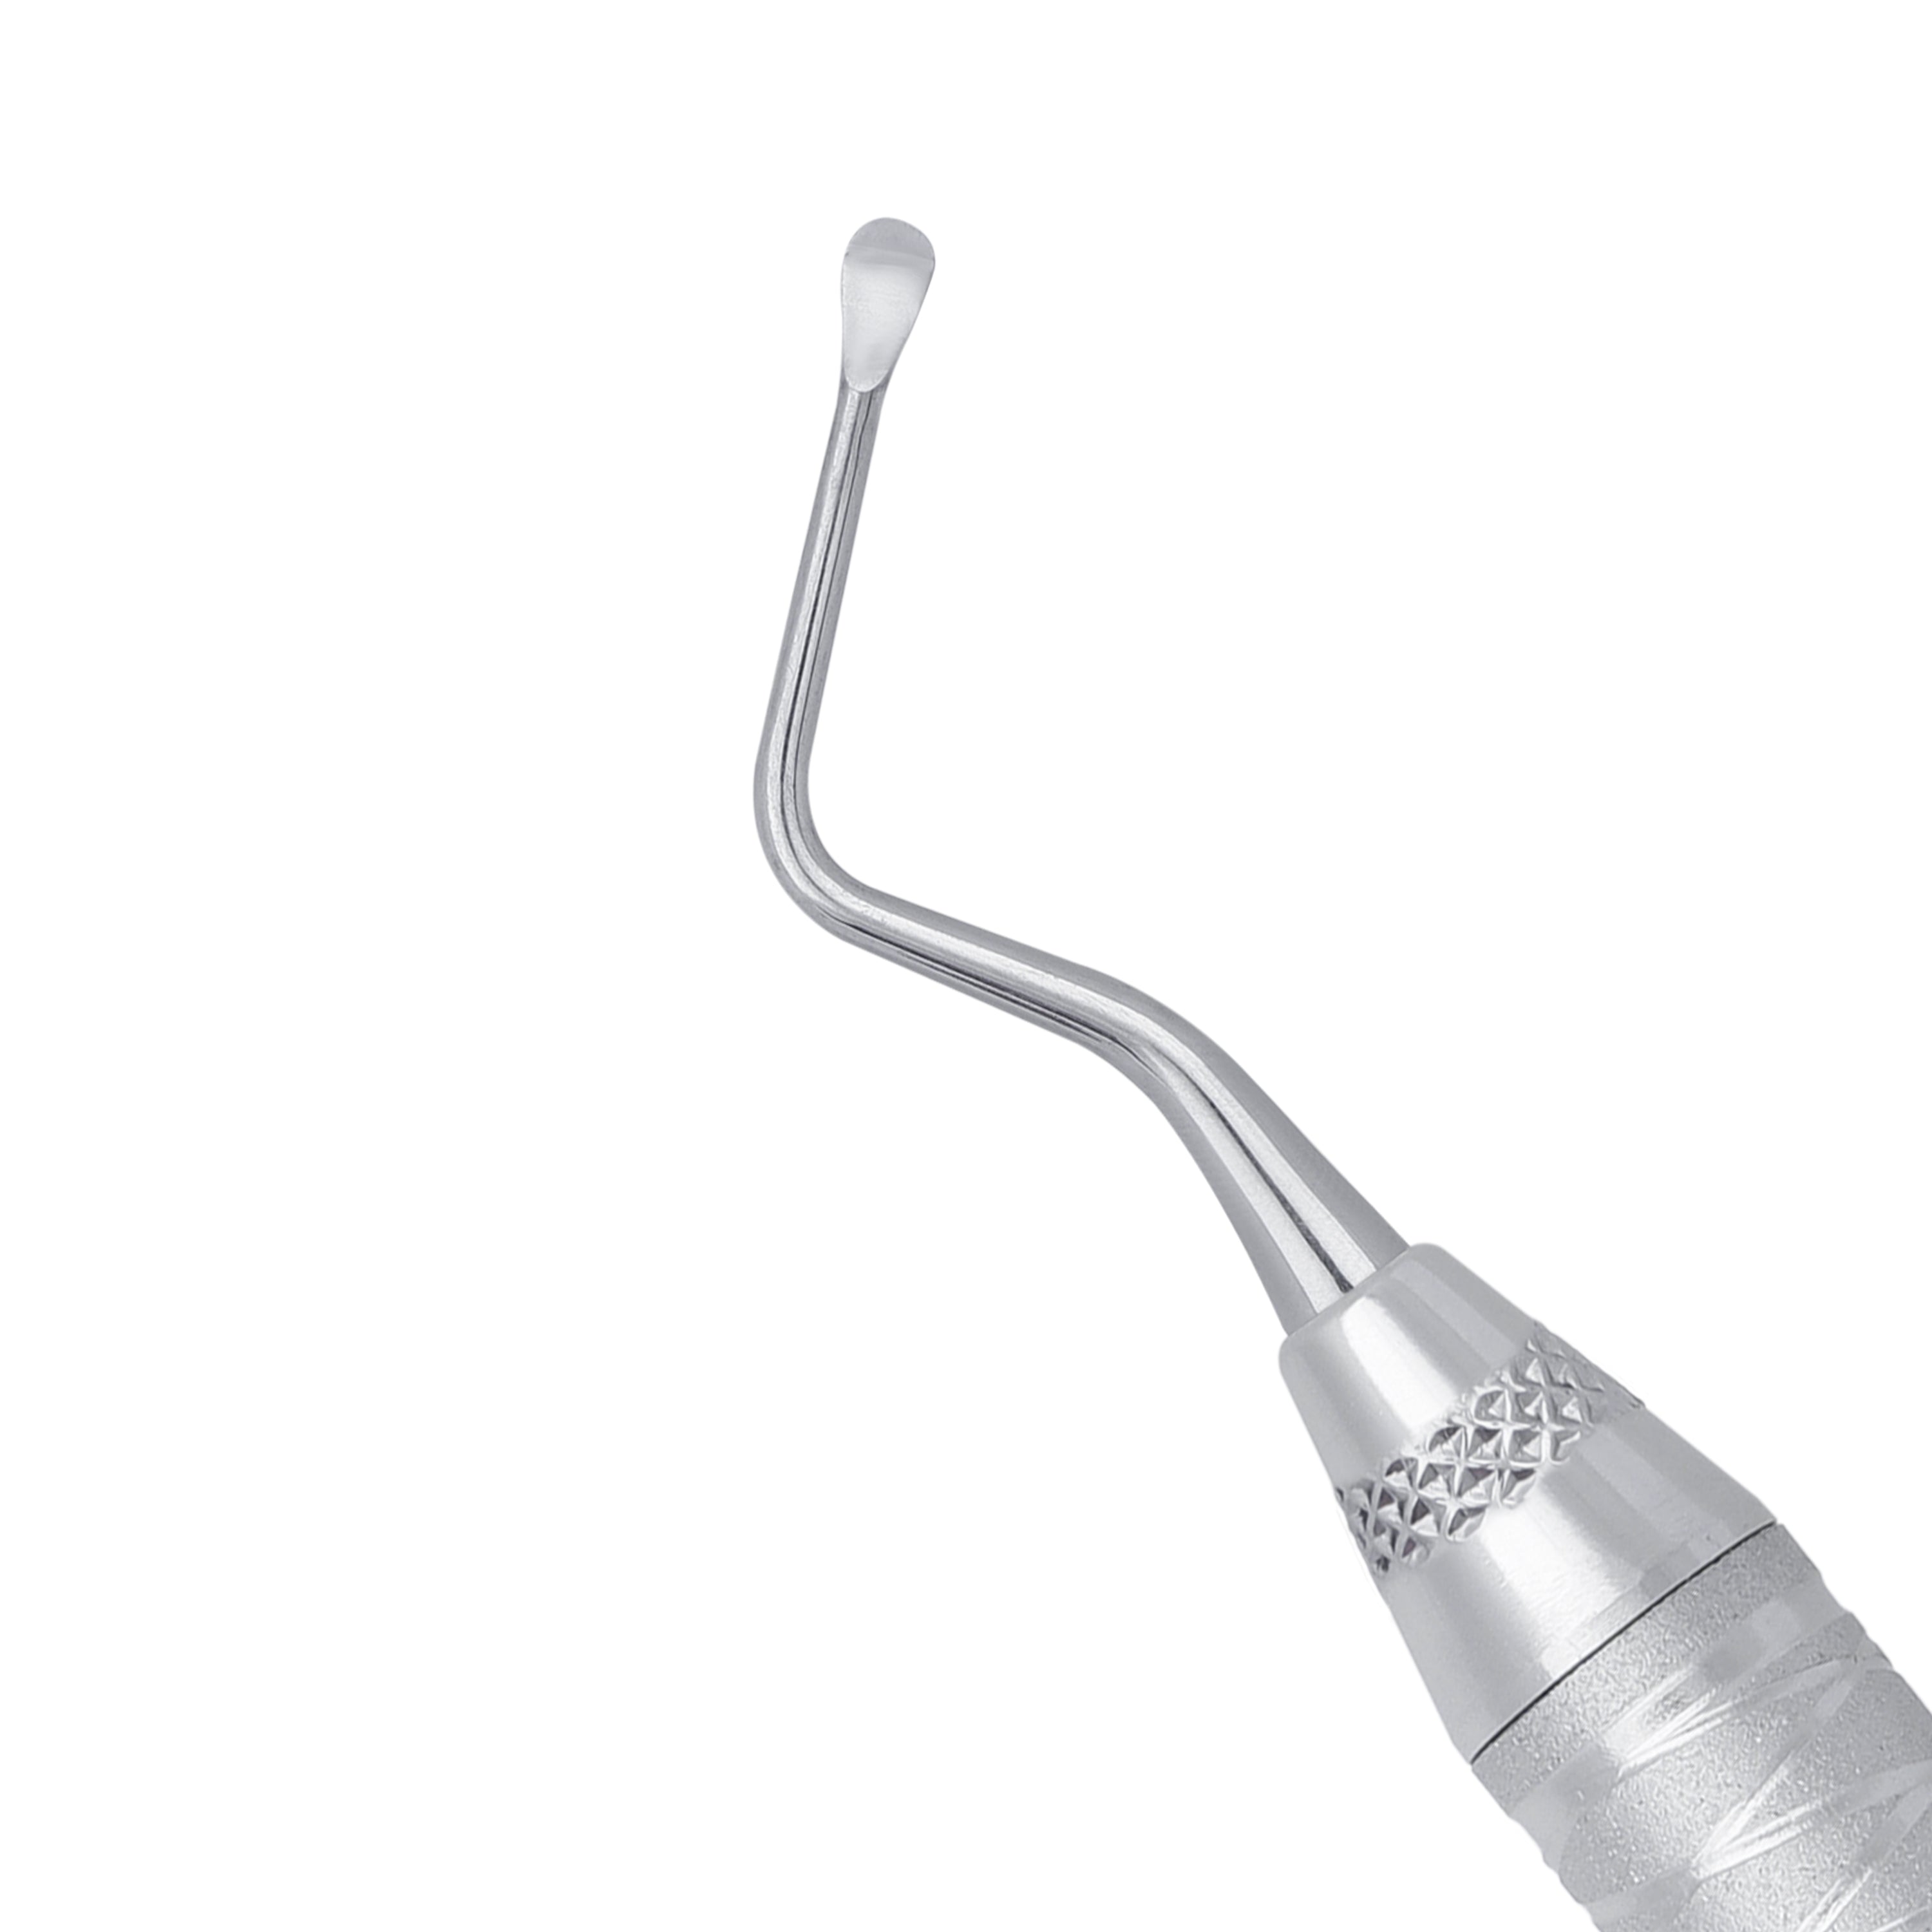 86 Lucas Spoon Shape Surgical Curette, 2.8MM - HiTeck Medical Instruments